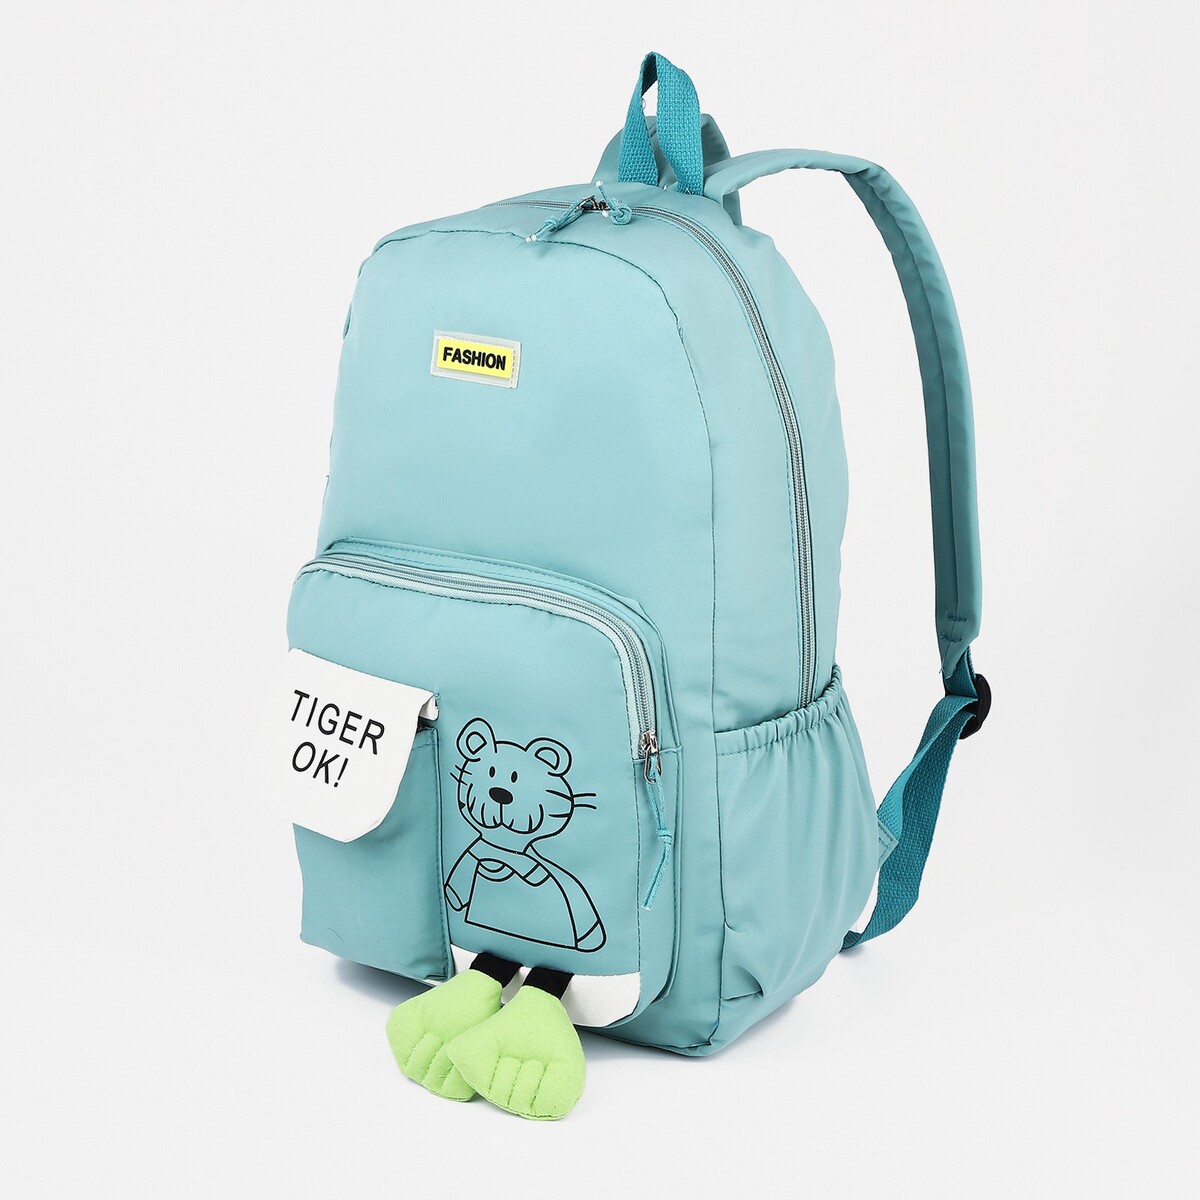 Рюкзак на молнии, 3 наружных кармана, цвет бирюзовый рюкзак школьный из текстиля 3 кармана бирюзовый